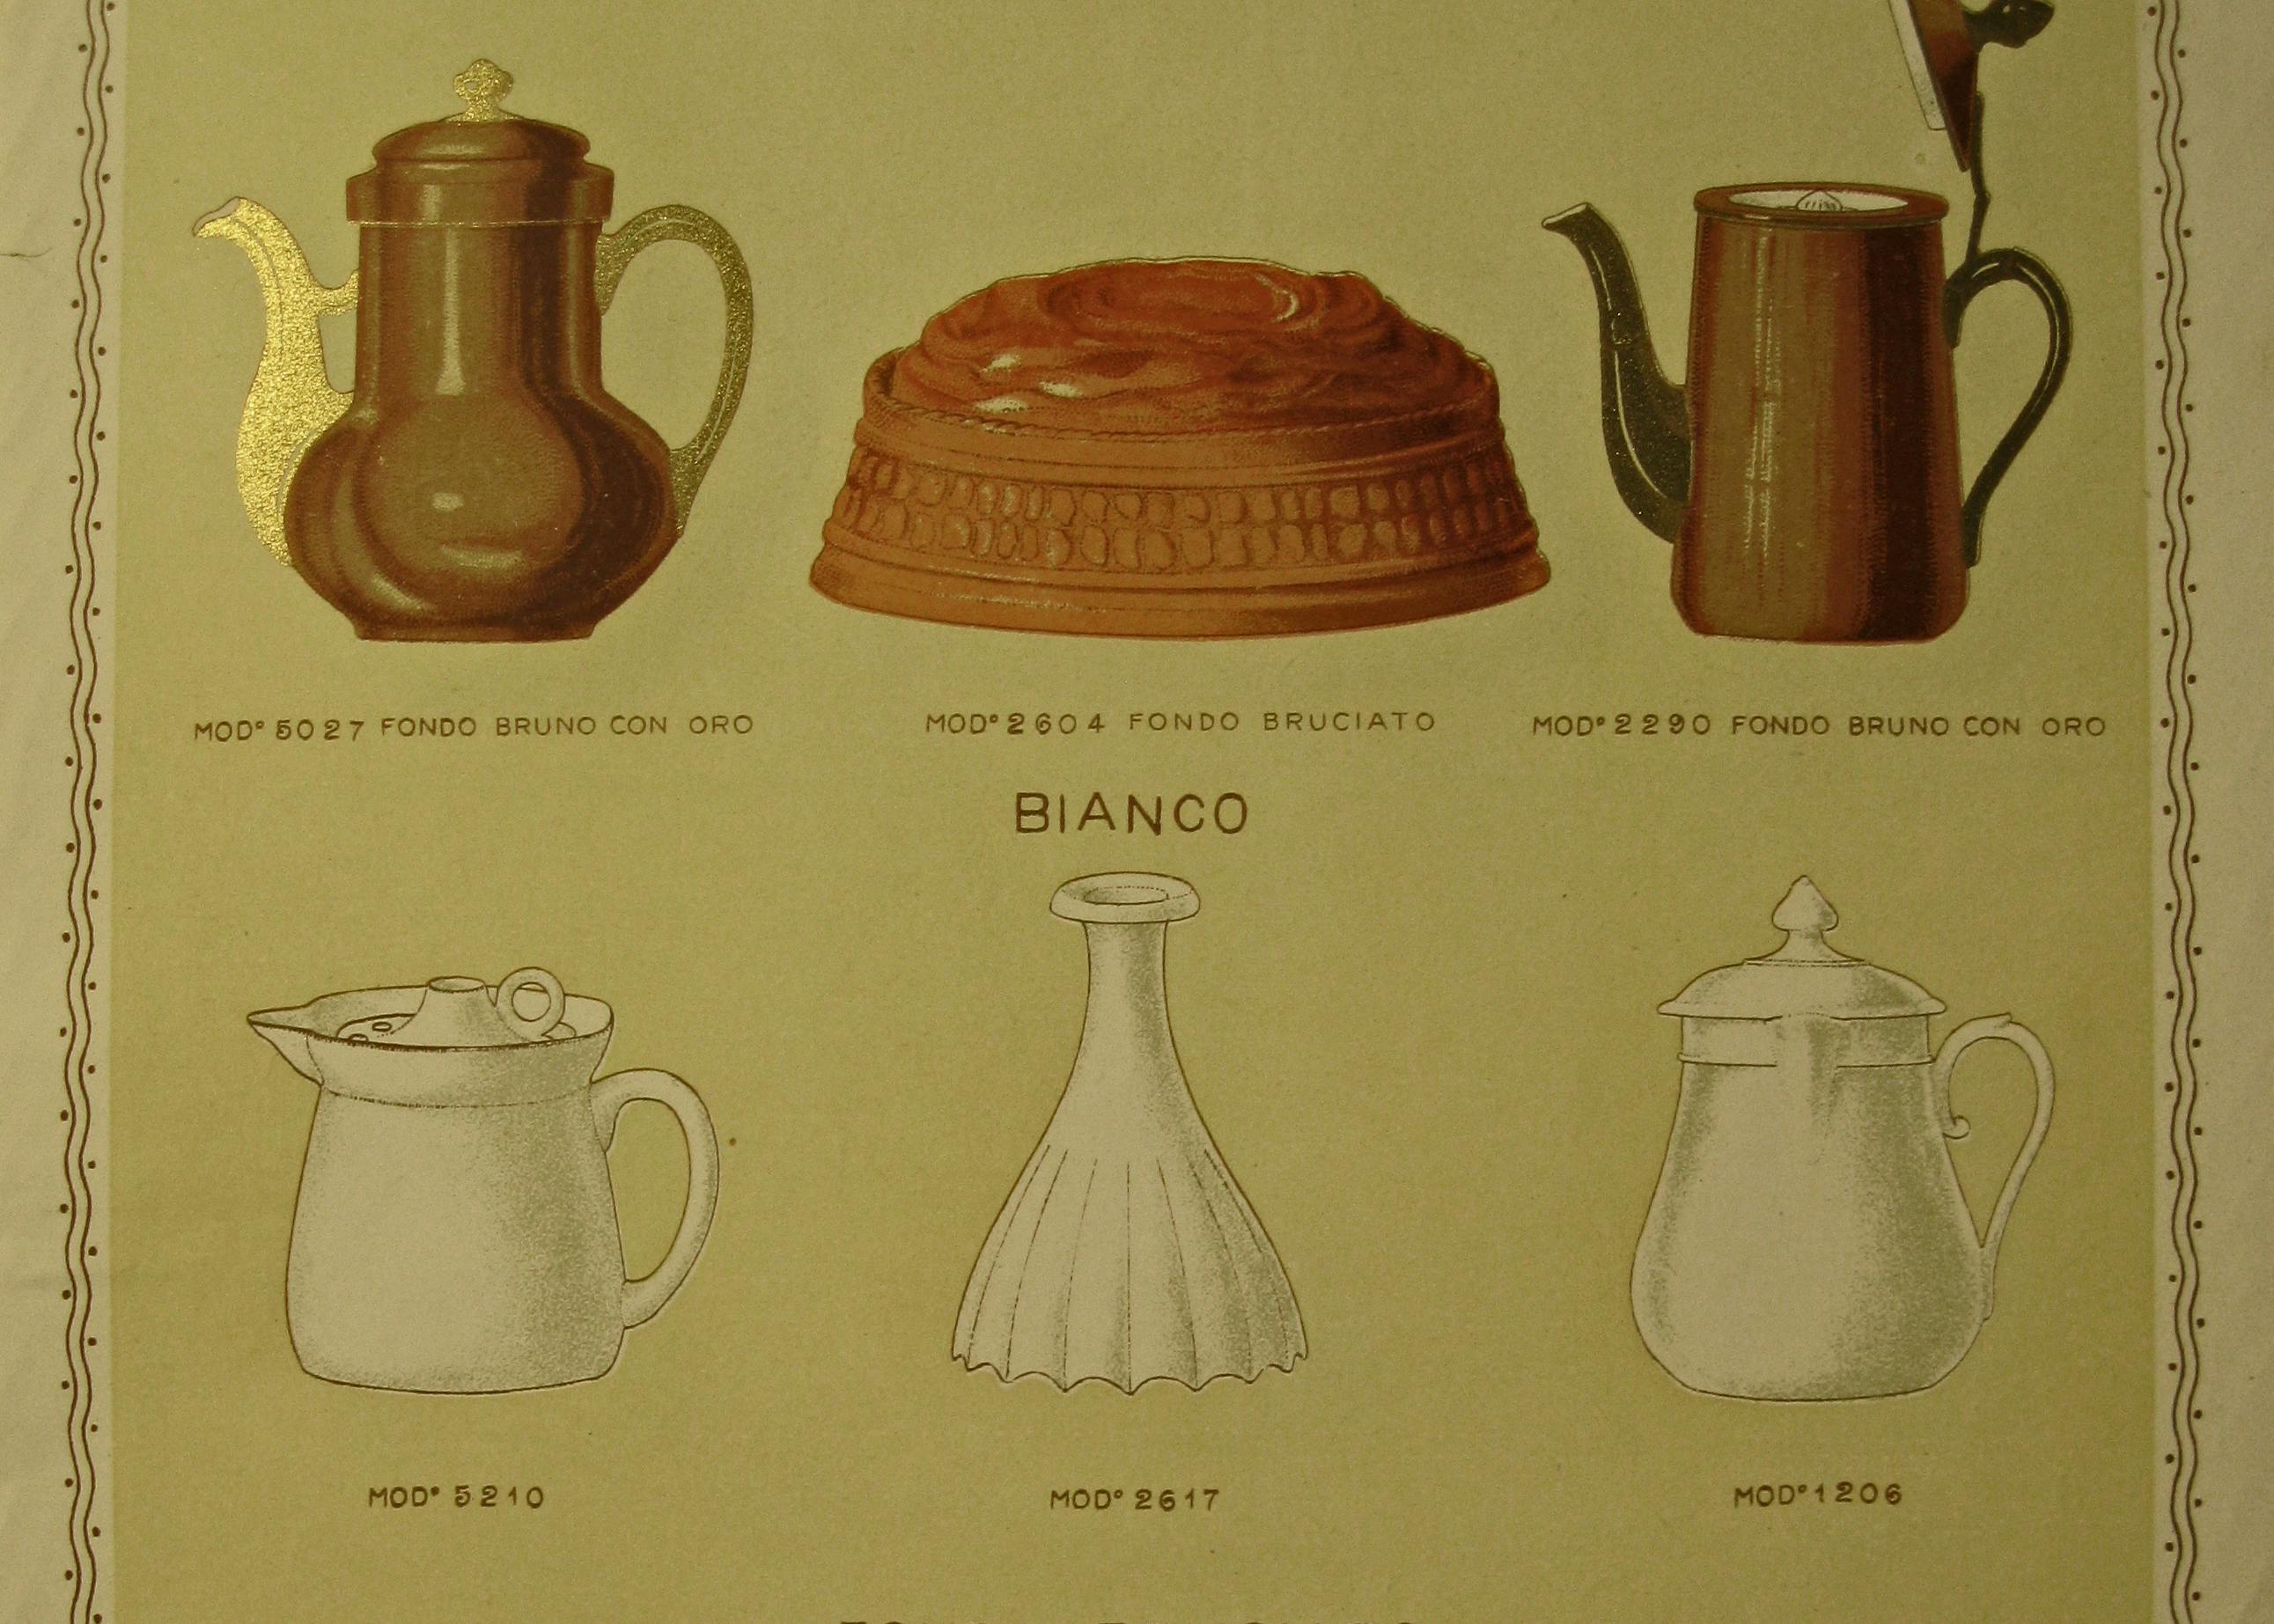 Tavola illustrata raffiugurante quattordici oggetti per la cottura dei cibi realizzati in porcellana pirofila. Gli oggetti sono di diverse forme e dimensioni.